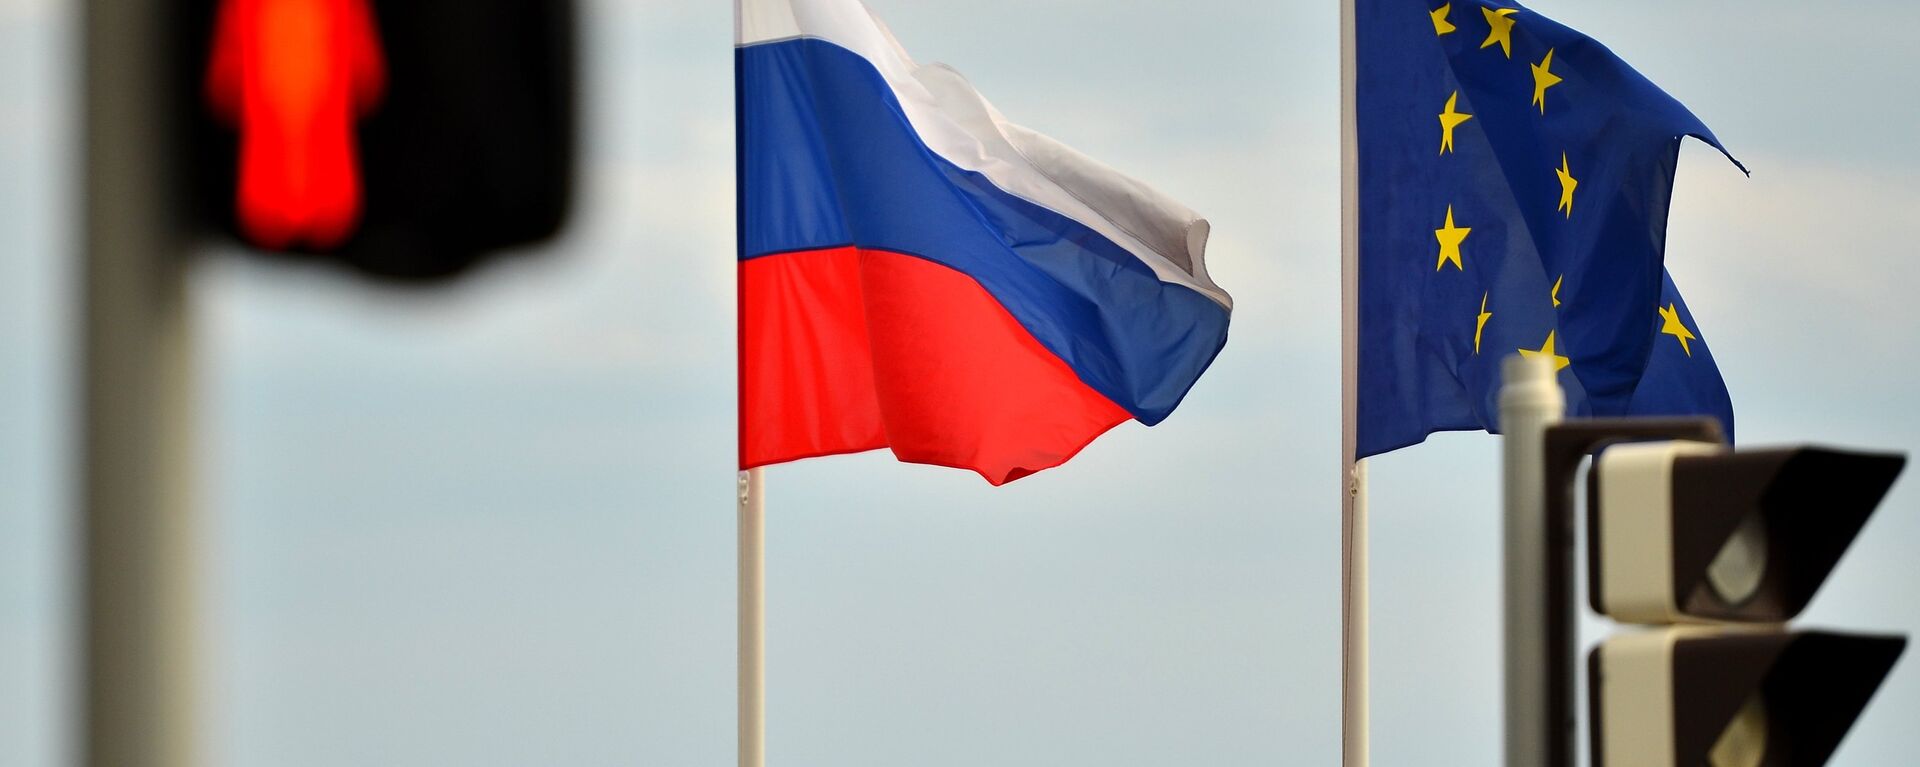 Флаги России, ЕС, Франции и герб Ниццы на набережной Ниццы - Sputnik Абхазия, 1920, 31.05.2022